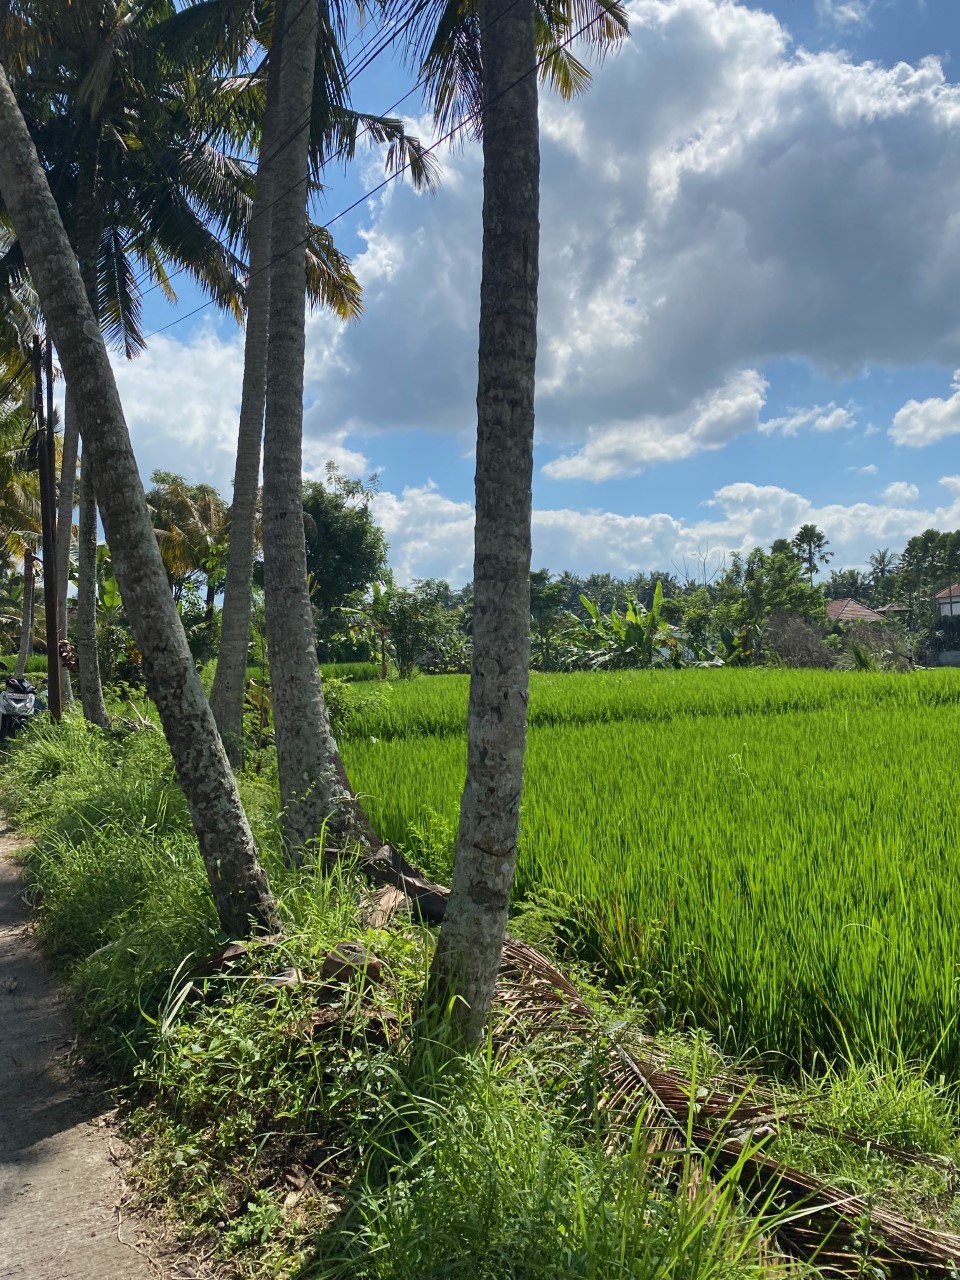 thumbnail IMG 8603 Esther emigreert met haar gezin naar Bali op zoek naar ultieme vrijheid: ‘Op Bali is iedereen blij met wat ze wél hebben en kijken ze niet naar wat ze niet hebben’